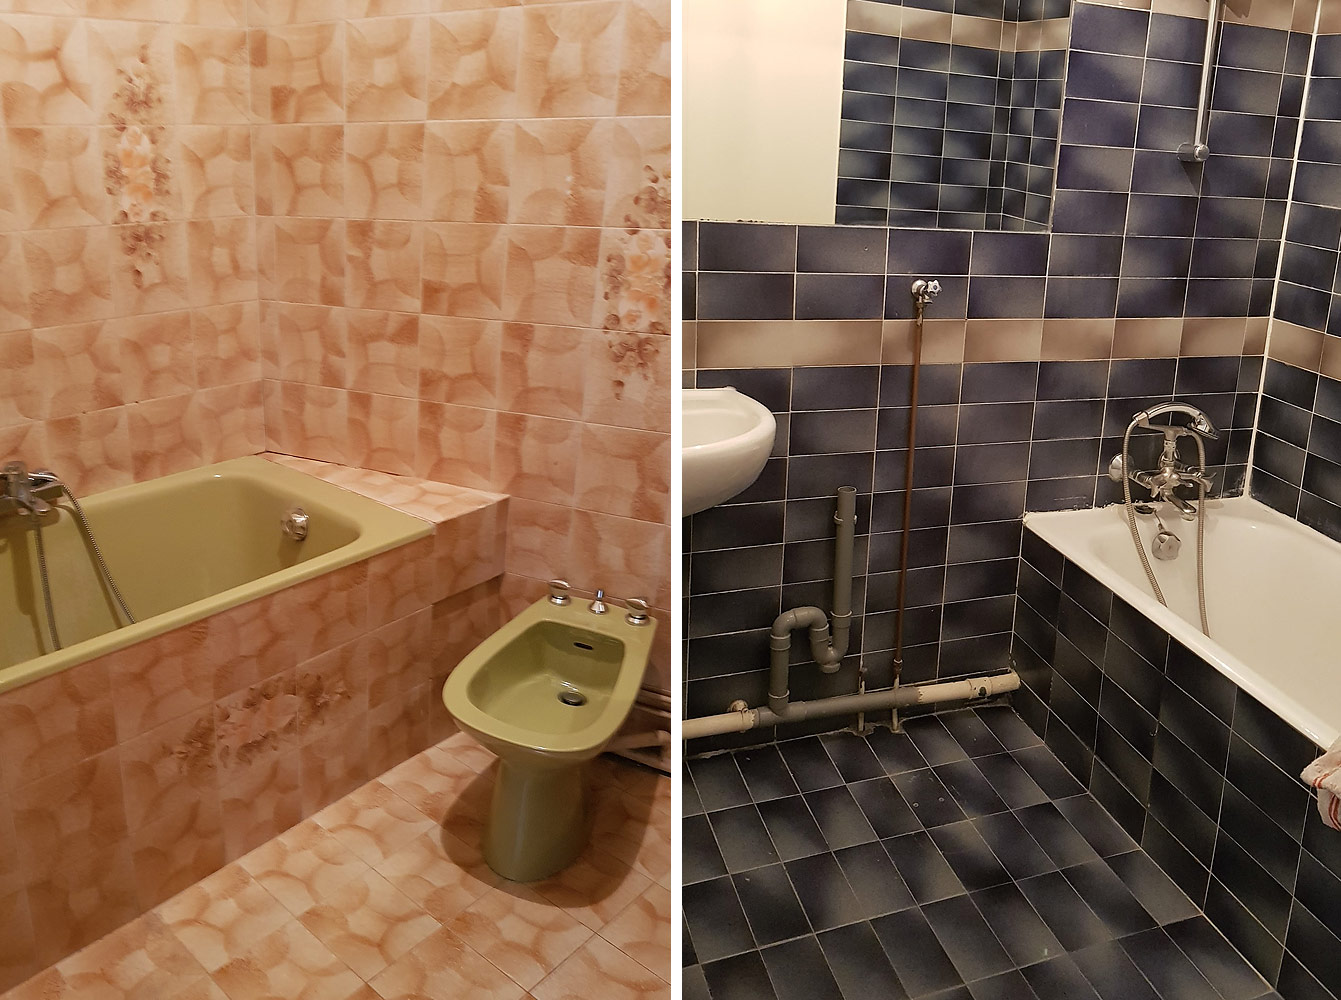 Recherche d'appartement à Paris : salles de bain dépassées...